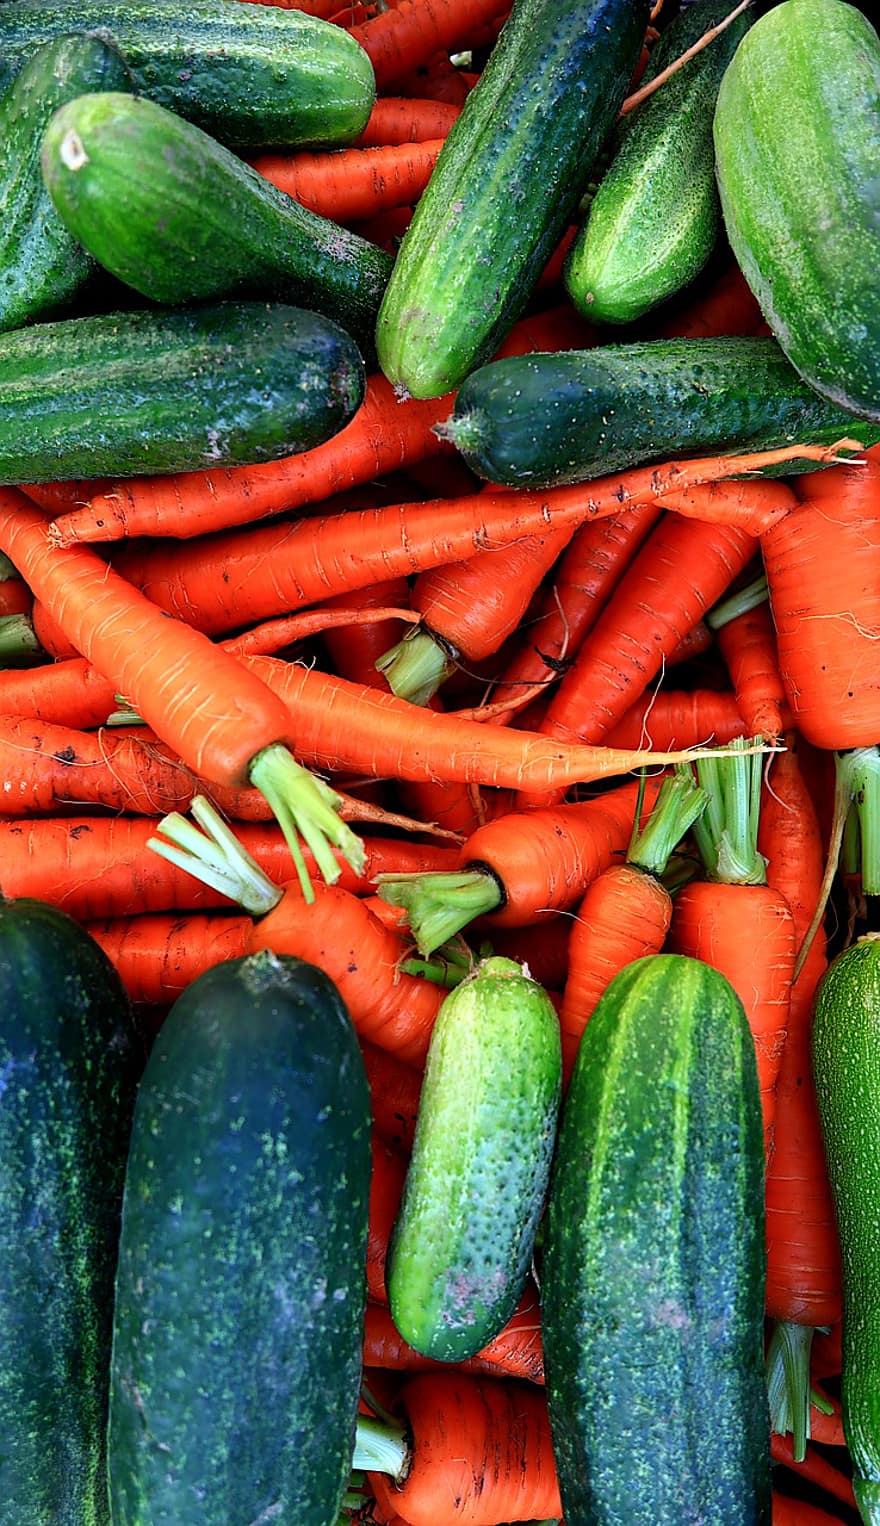 ผัก, แตงกวา, บวบ, ค่าใช้จ่าย, แครอท, การเกษตร, สุขภาพ, สีเขียว, อาหารการกิน, ชีวภาพ, กิน